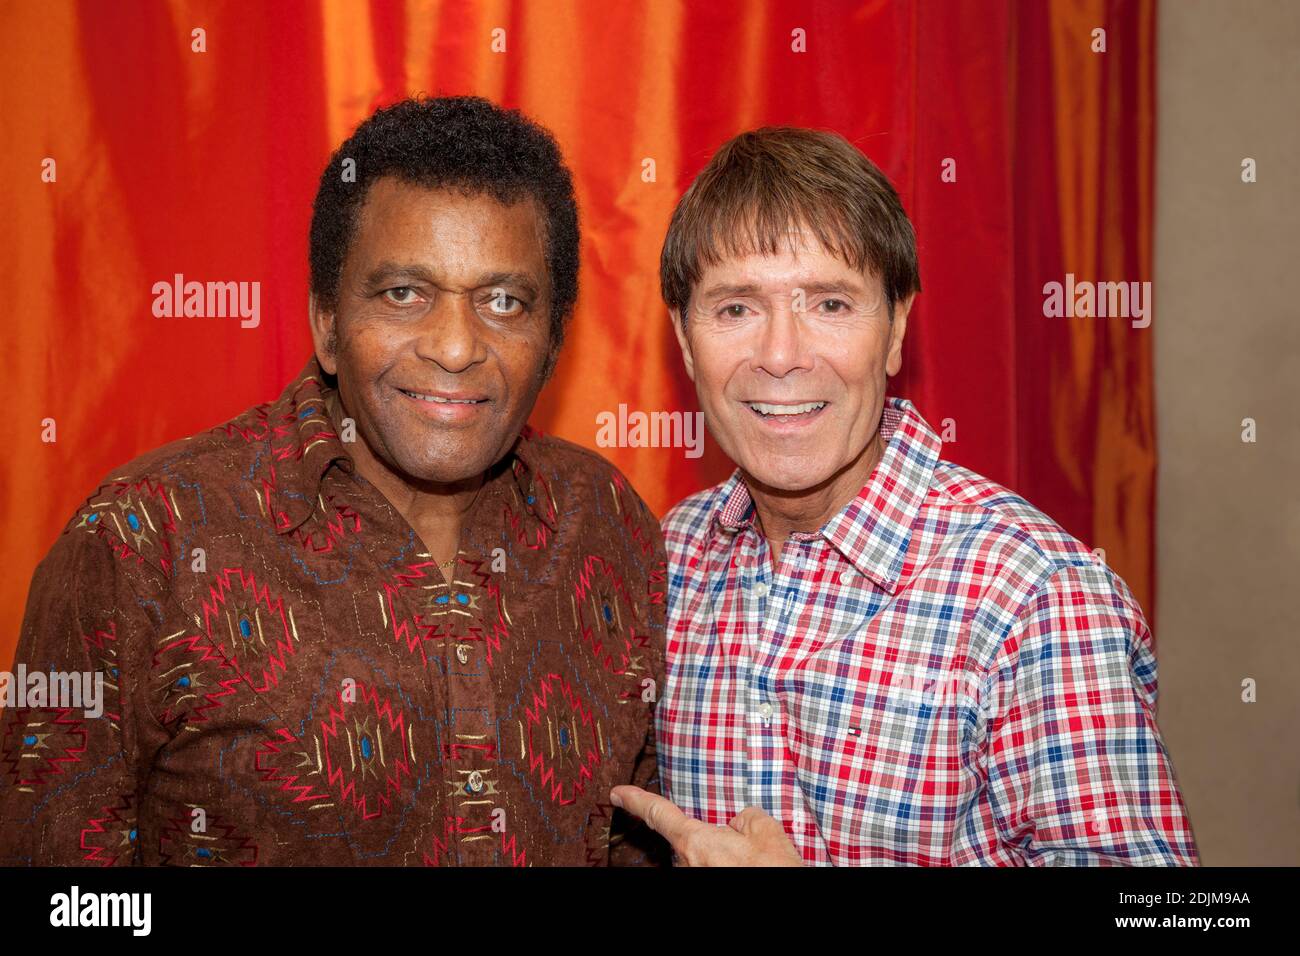 Zwei Musiklegenden - der verstorbene Charley Pride mit Sir Cliff Richard hinter der Bühne im Grand Ole Opry - Apr 2013, Nashville, Tennessee, USA Stockfoto